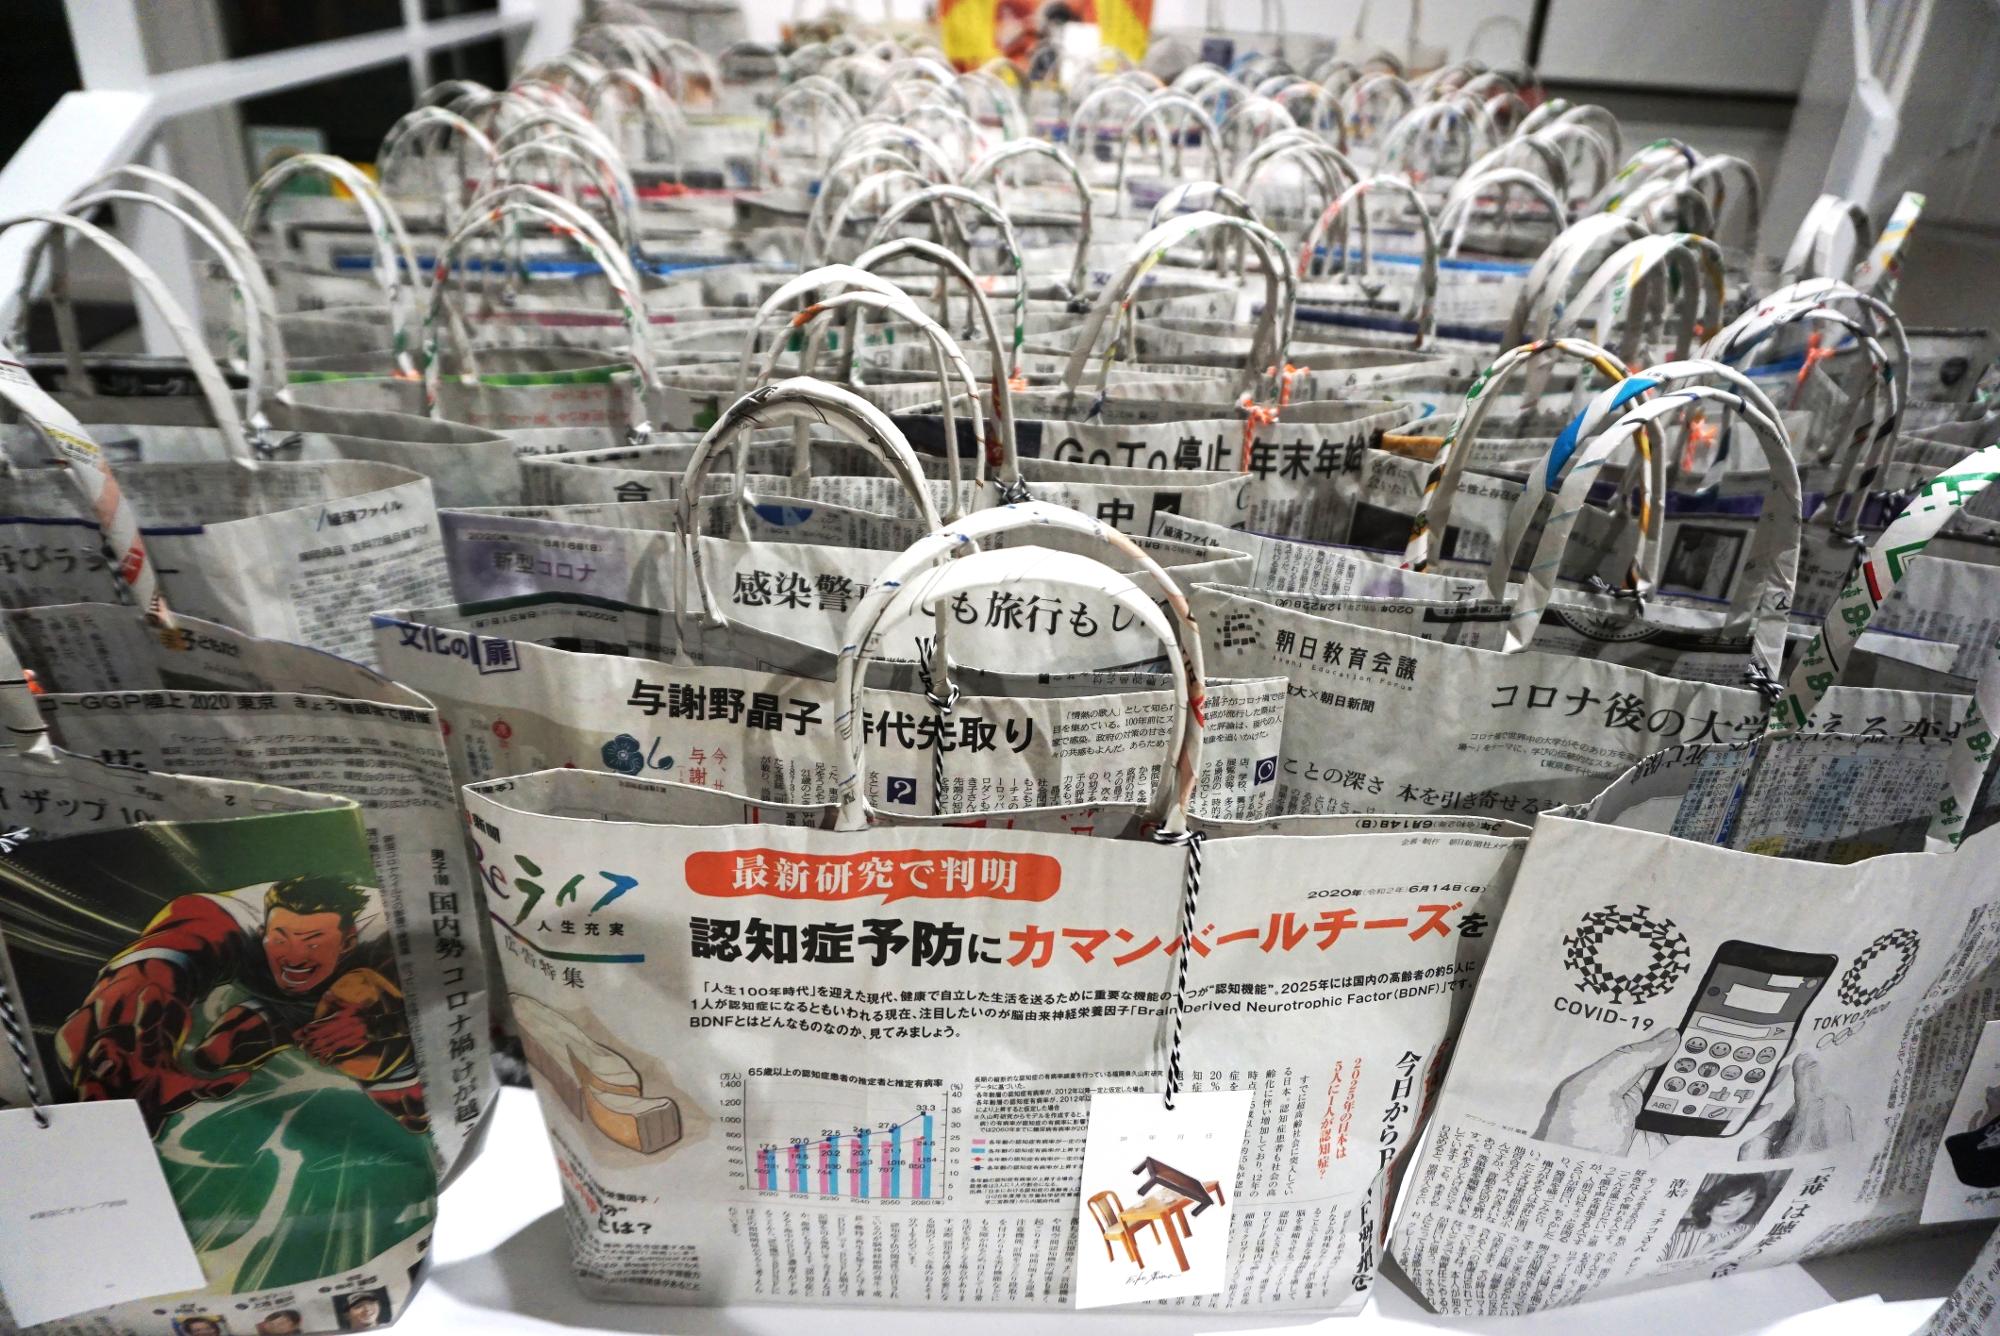 嶋暎子さんの新聞バッグも、ここまで大量にならべると圧巻。表に見せている記事の選び方もおもしろい